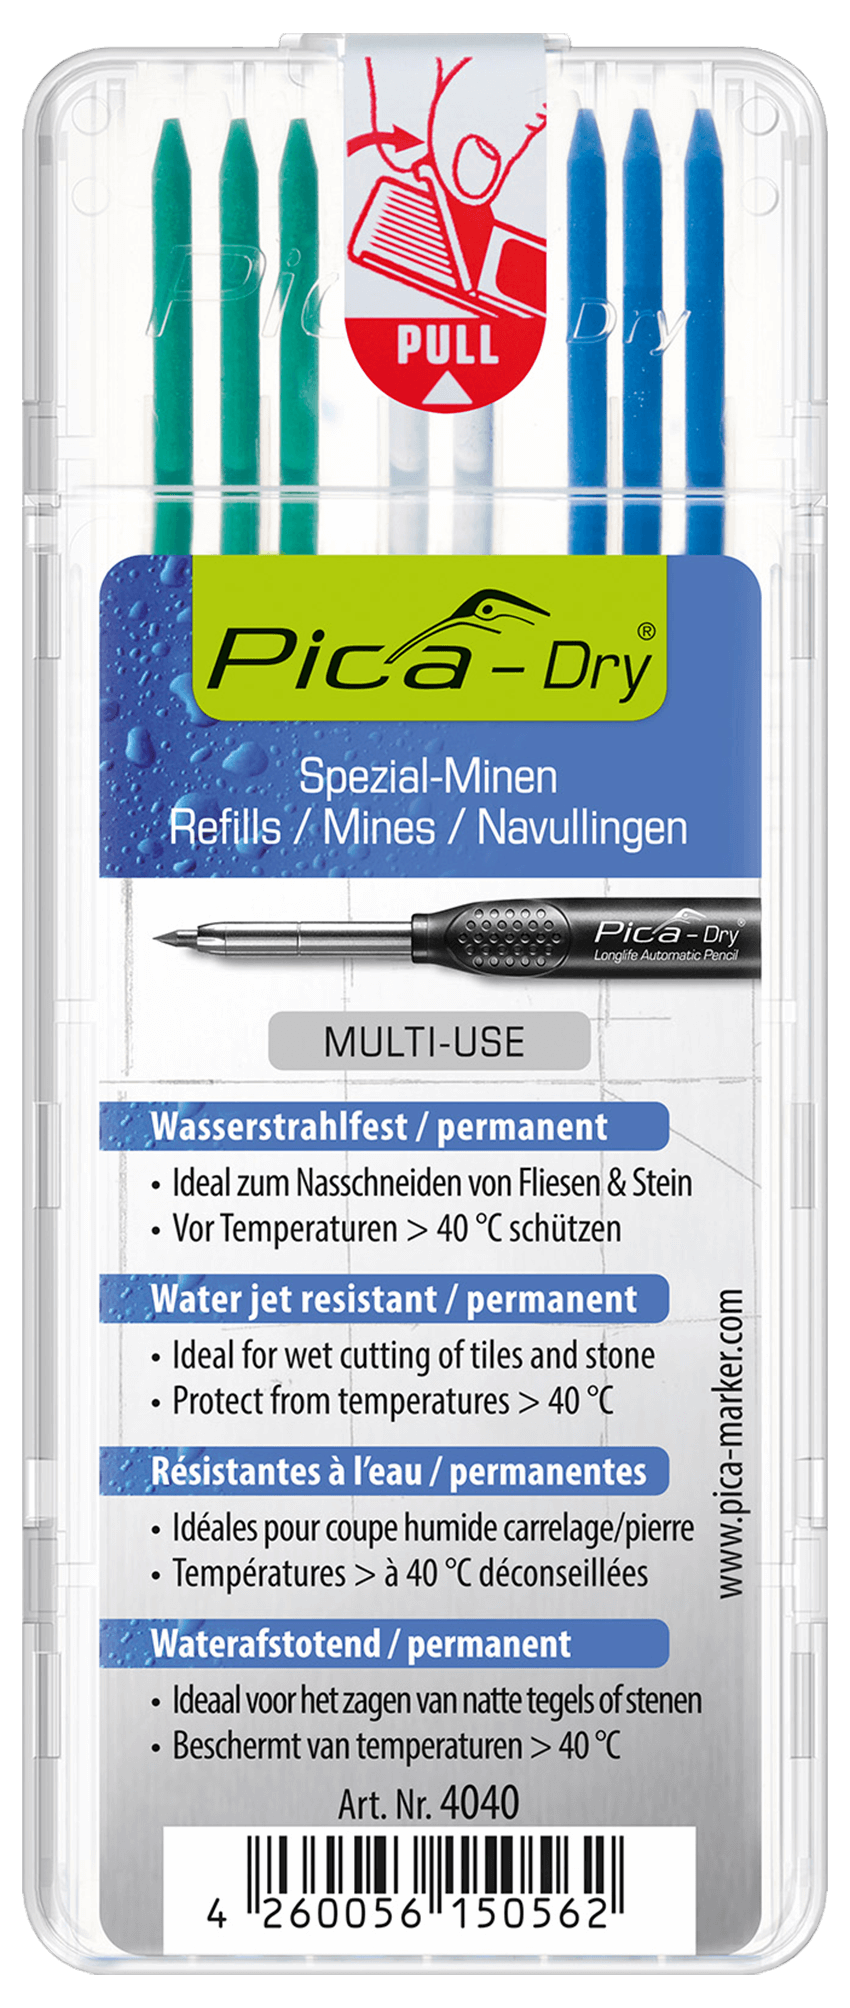 Recharges Pica Dry Longlife Automatic Pencil "Résistant aux jets d'eau" 4040